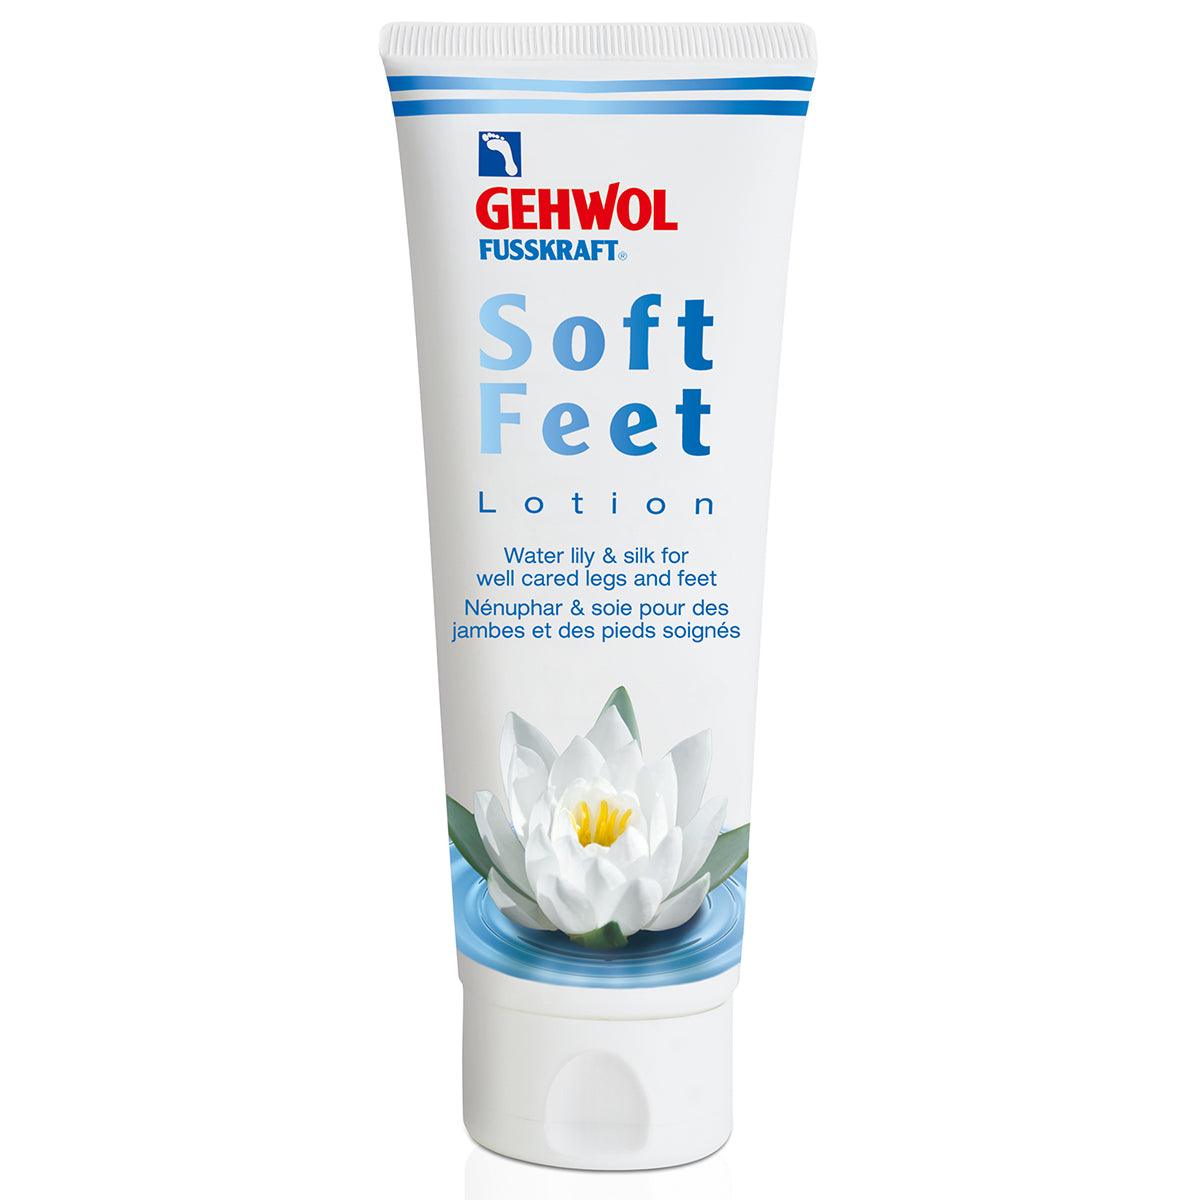 Gehwol Fusskraft Soft Feet Lotion | Fotpleie | Gehwol | JK SHOP | JK Barber og herre frisør | Lavepriser | Best